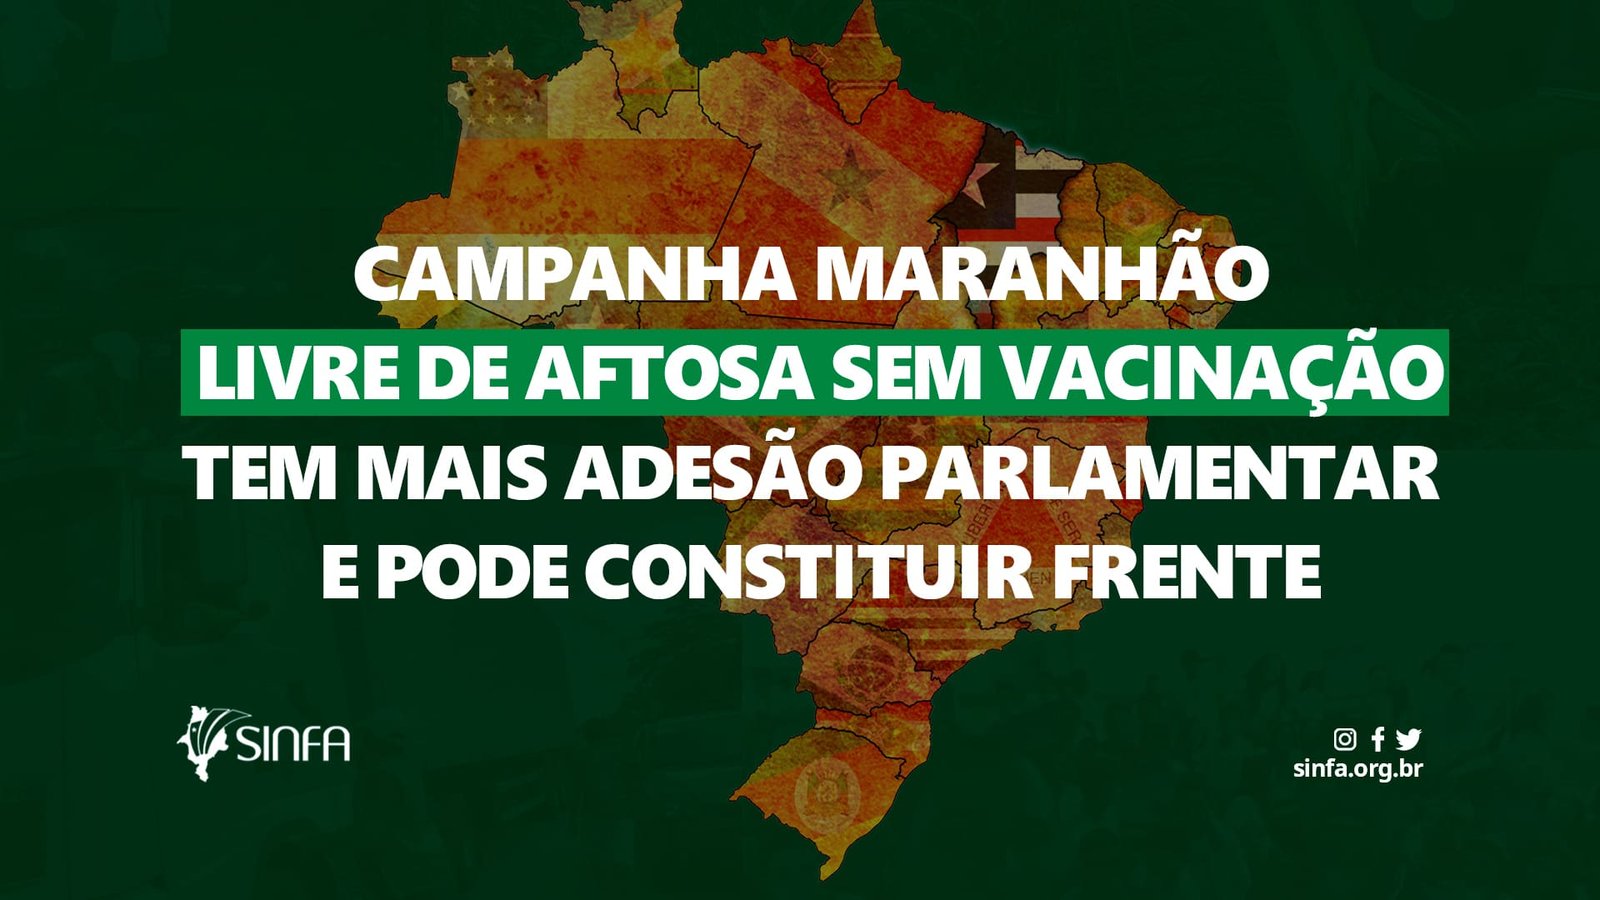 Campanha Maranhão livre de aftosa sem vacinação tem mais adesão parlamentar e pode constituir frente